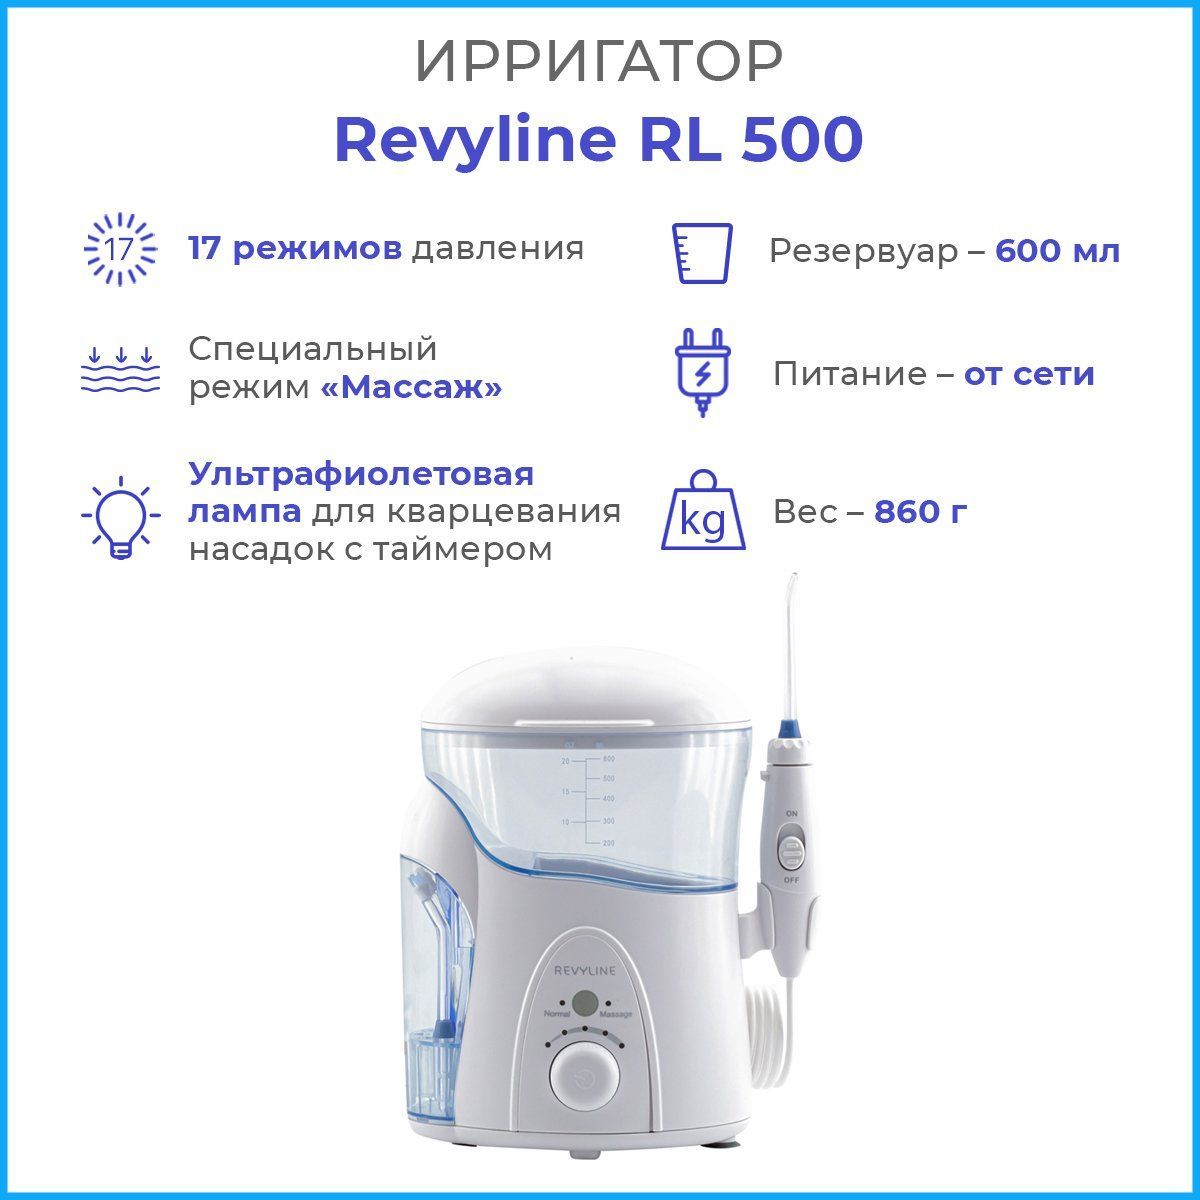 Revyline Rl500